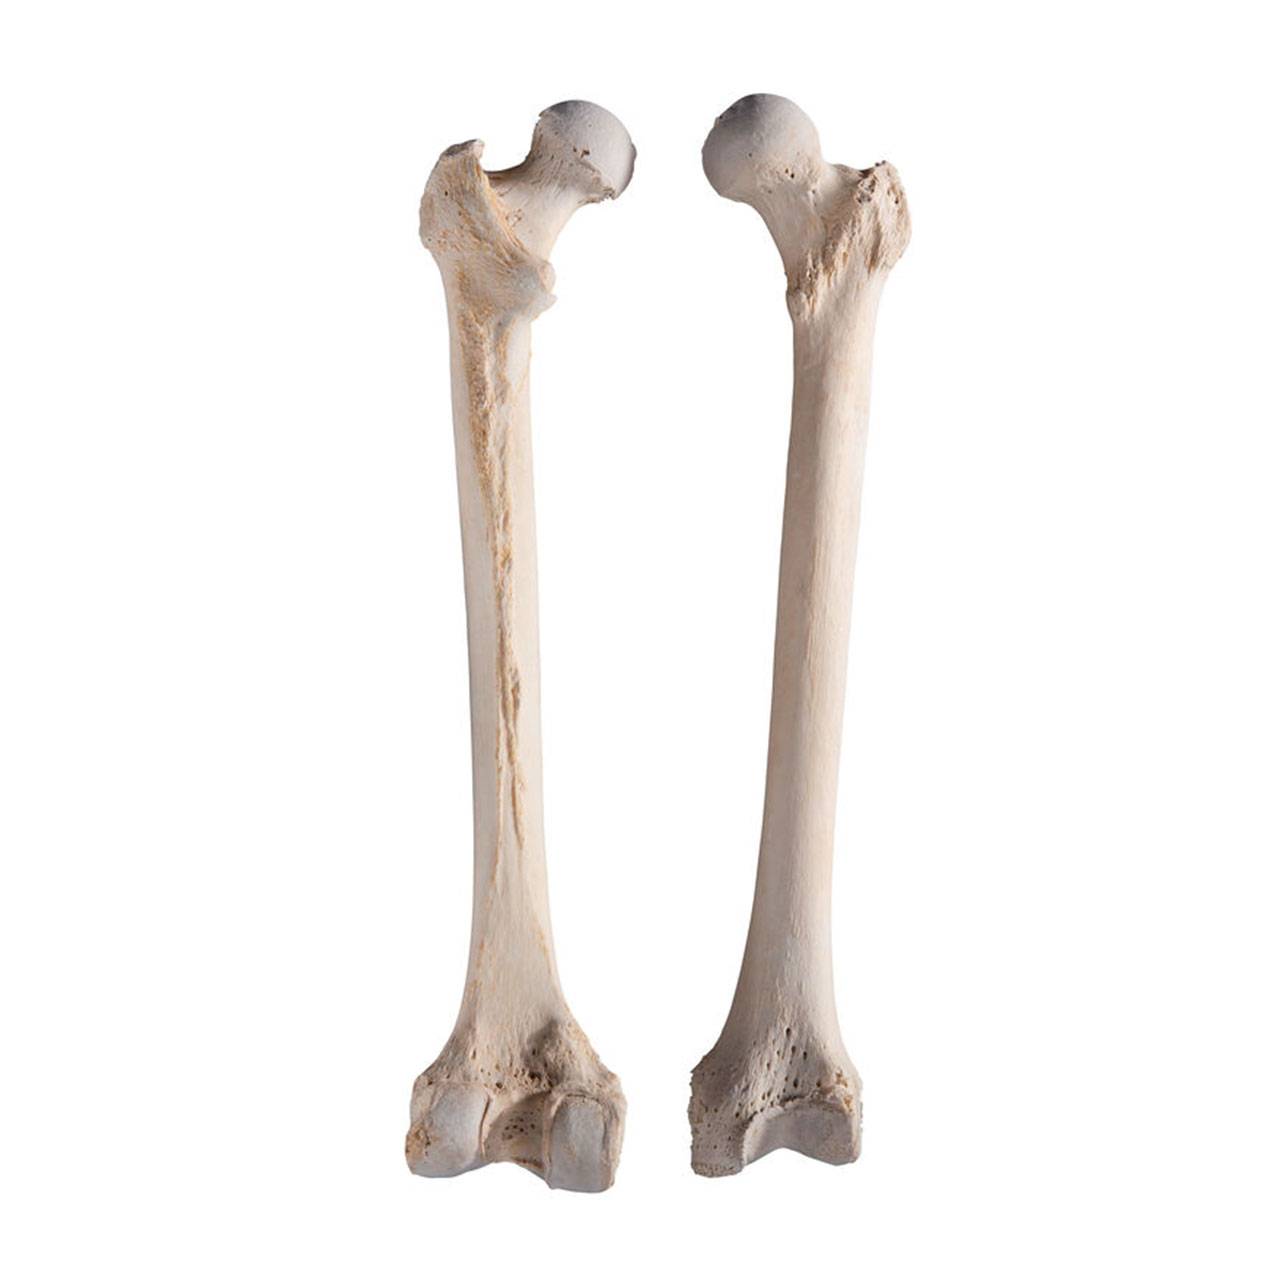 skulls-skeletons-femoral-bones-no-watermark.jpg